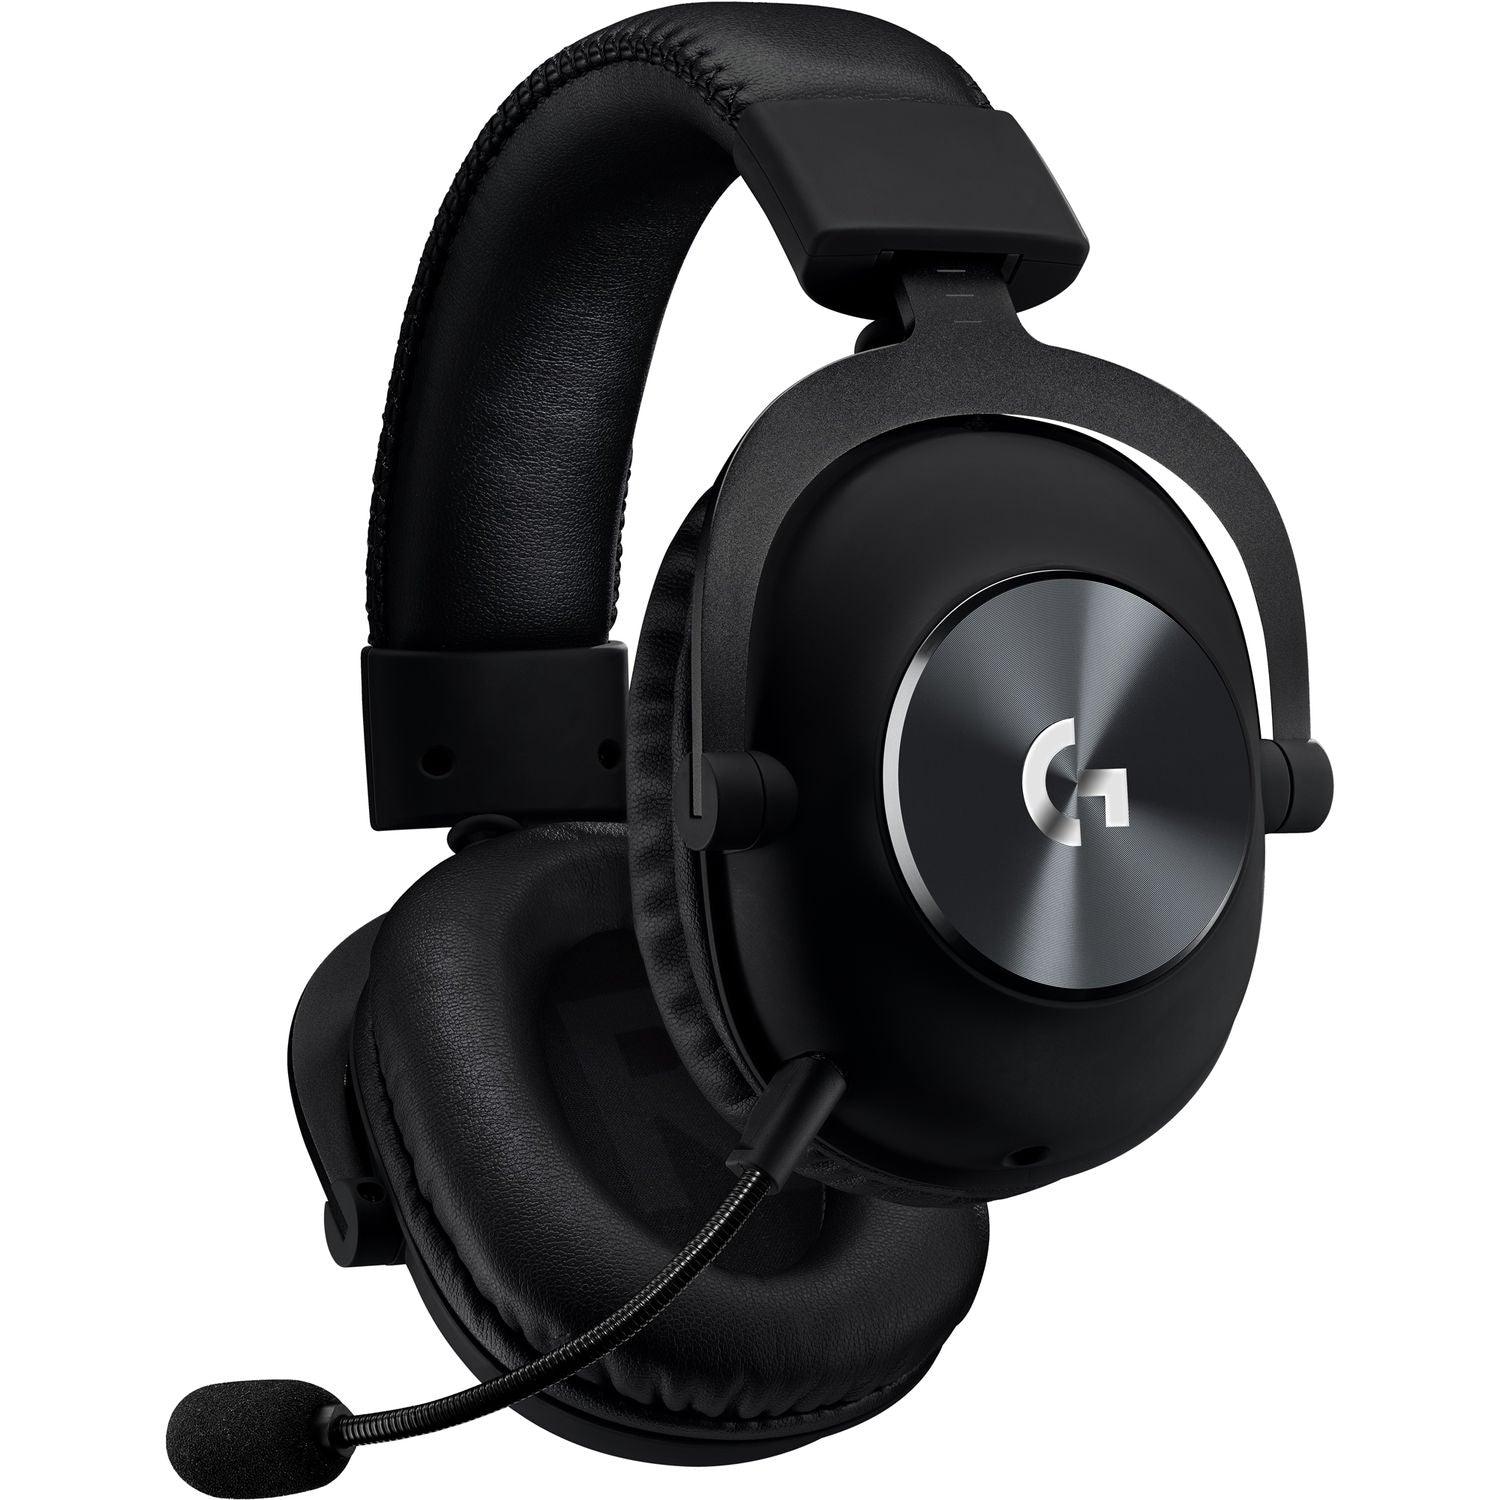 لوجيتك جي برو إكس سماعة الألعاب (الجيل الثاني) مع صوت أزرق، سماعات رأس دي تي إس 7.1 و50 ملم PRO-G - أسود